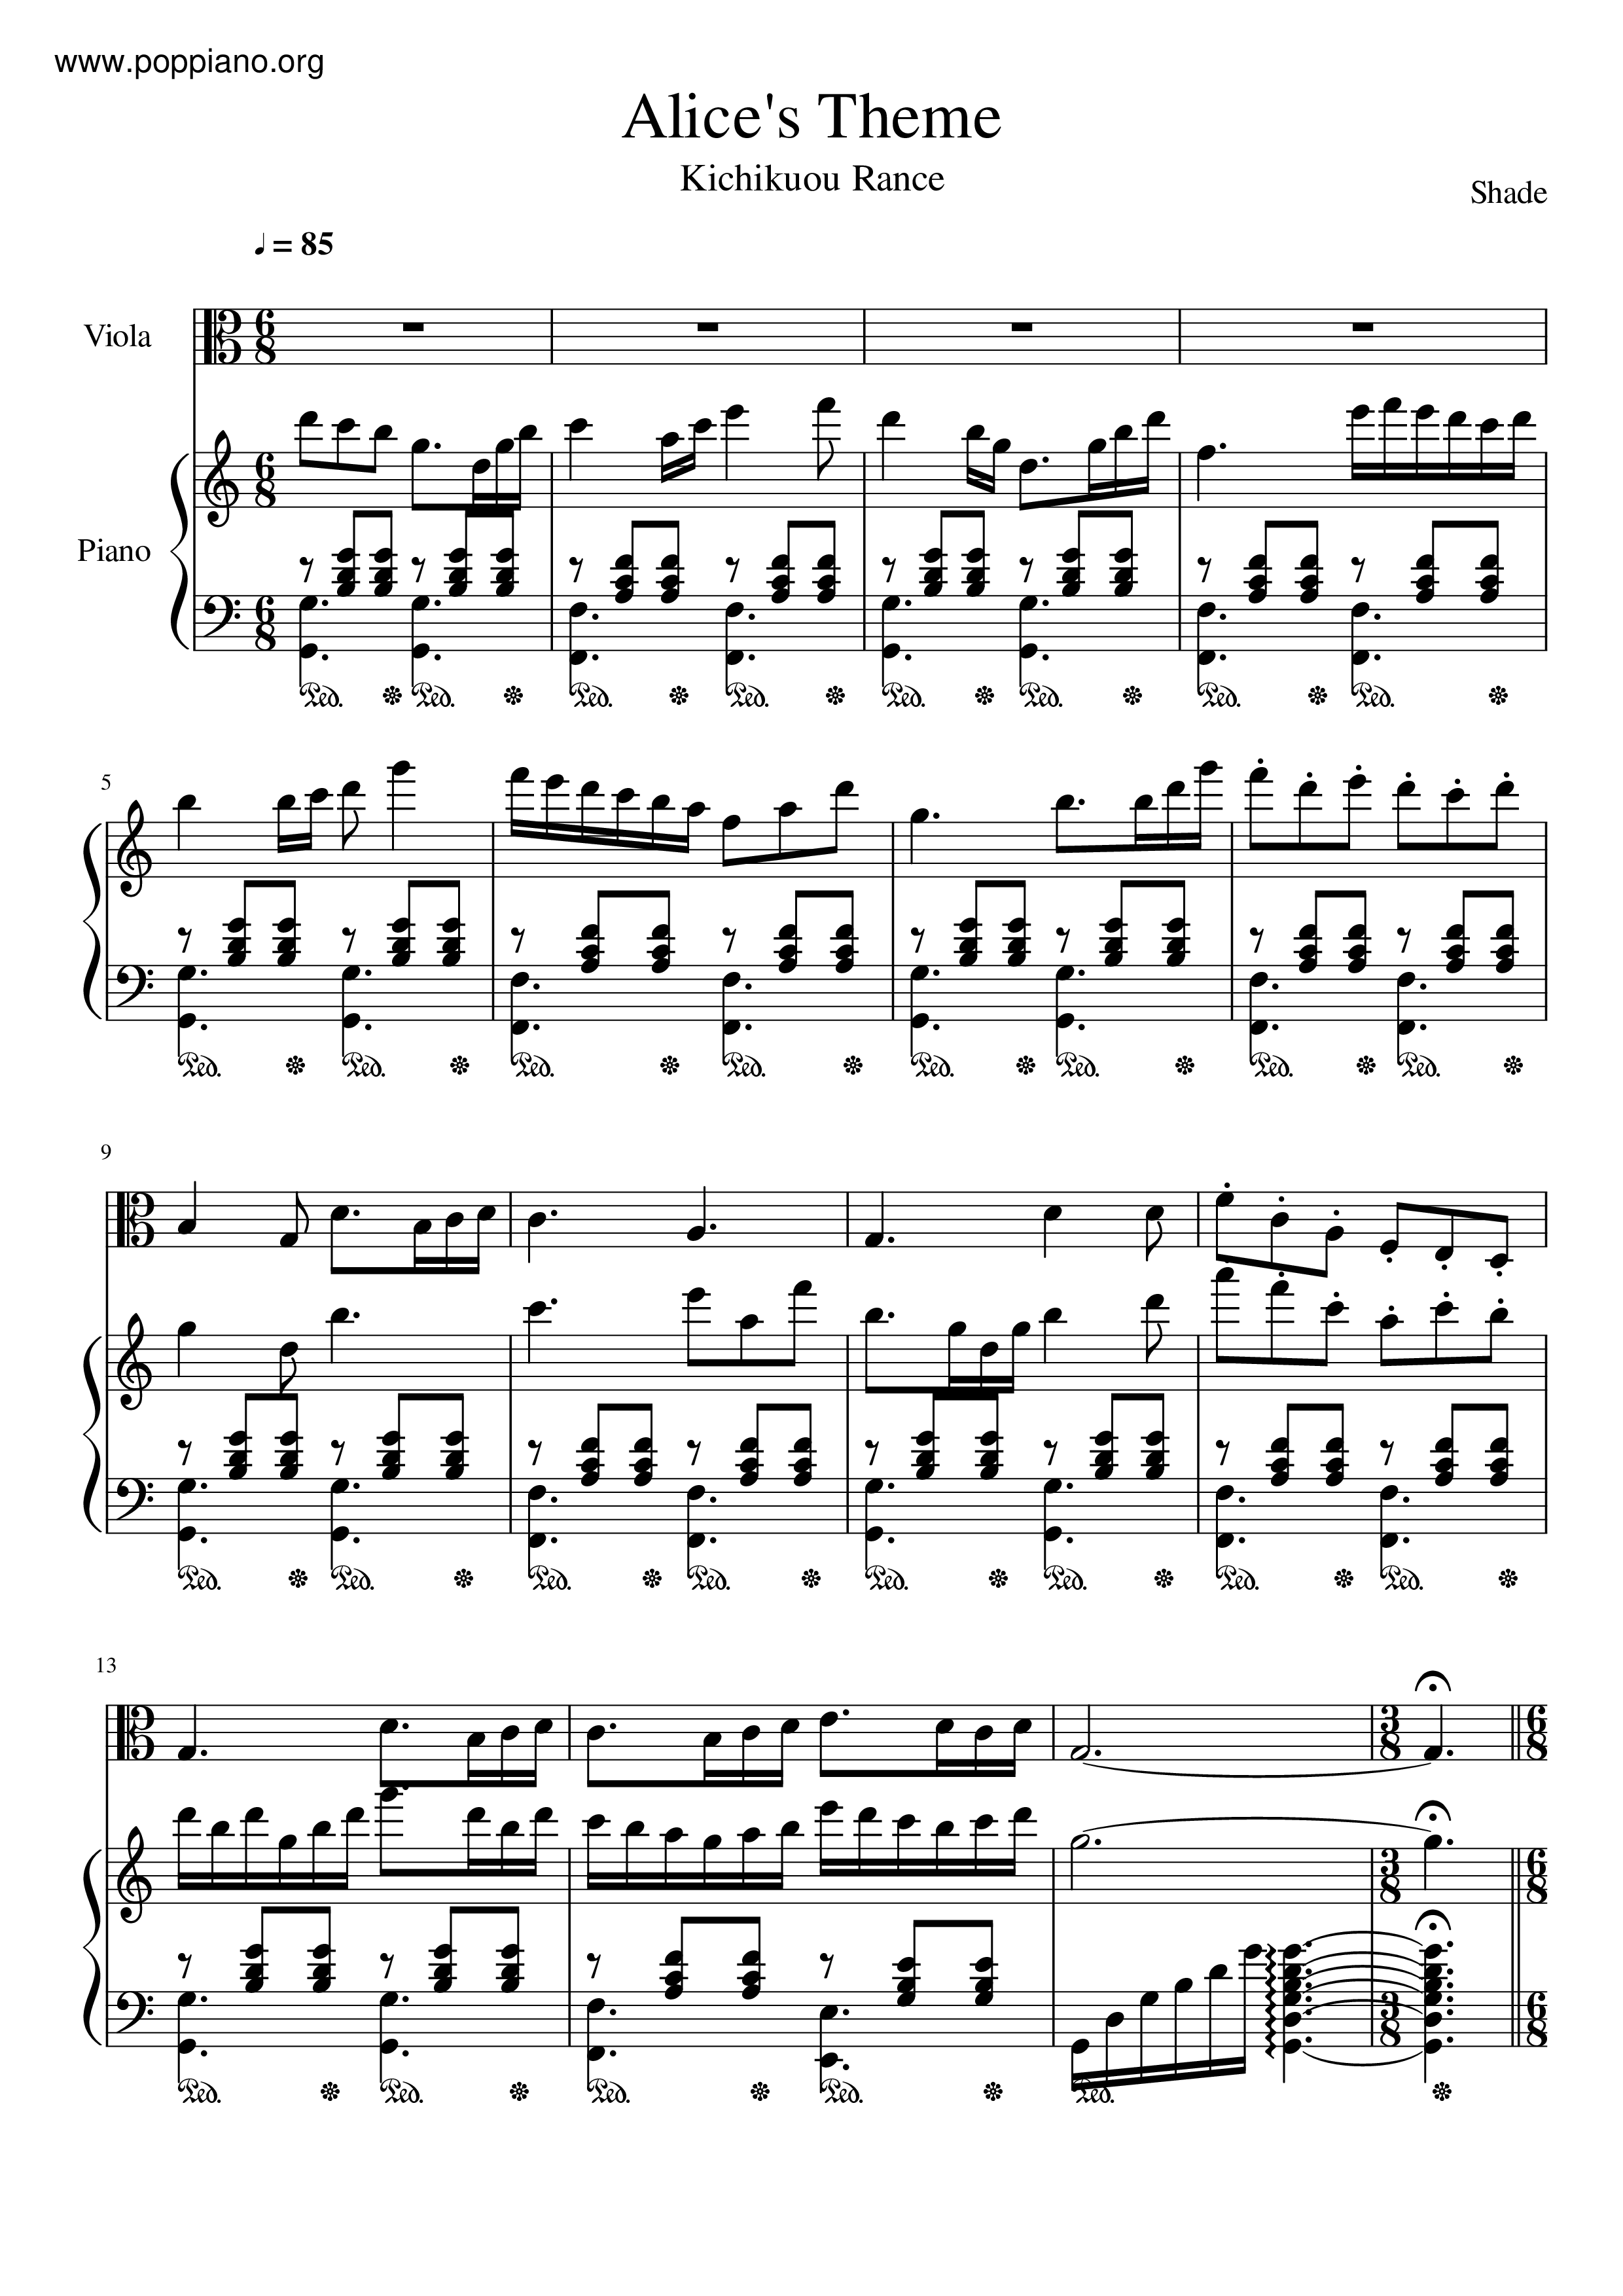 Alice In Wonderland - Alice's Themeピアノ譜